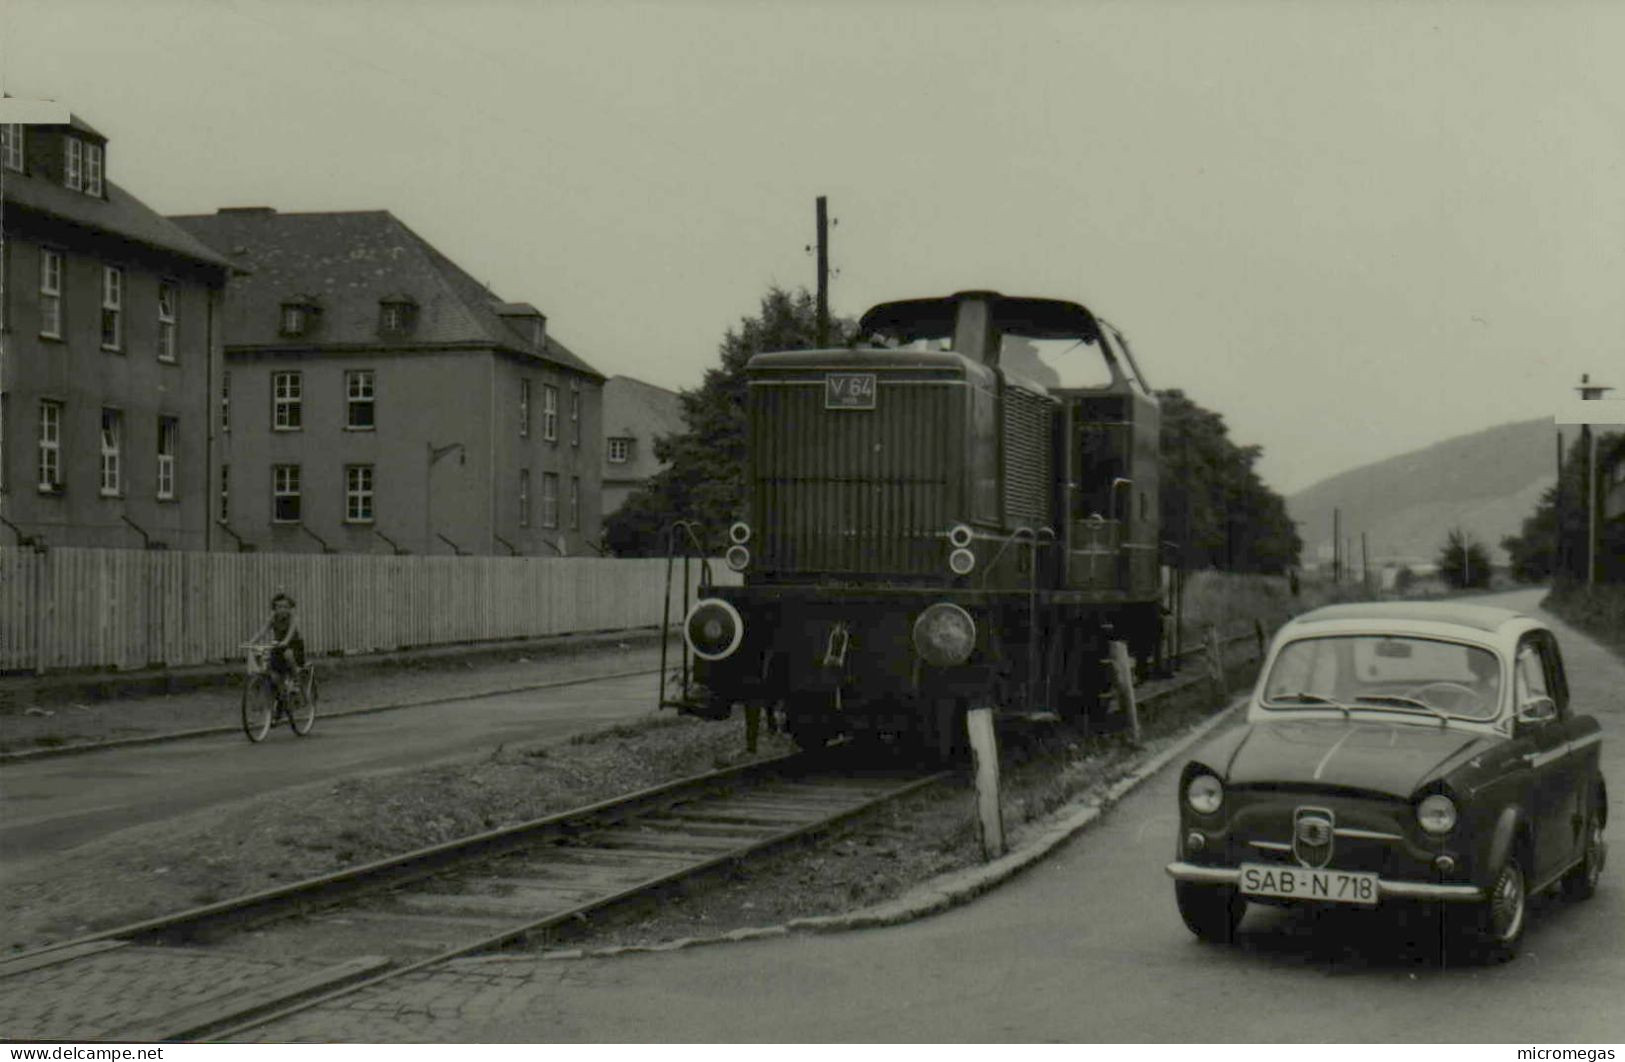 Reproduction - Moselbahn V 64, 1-8-1967 - Treinen